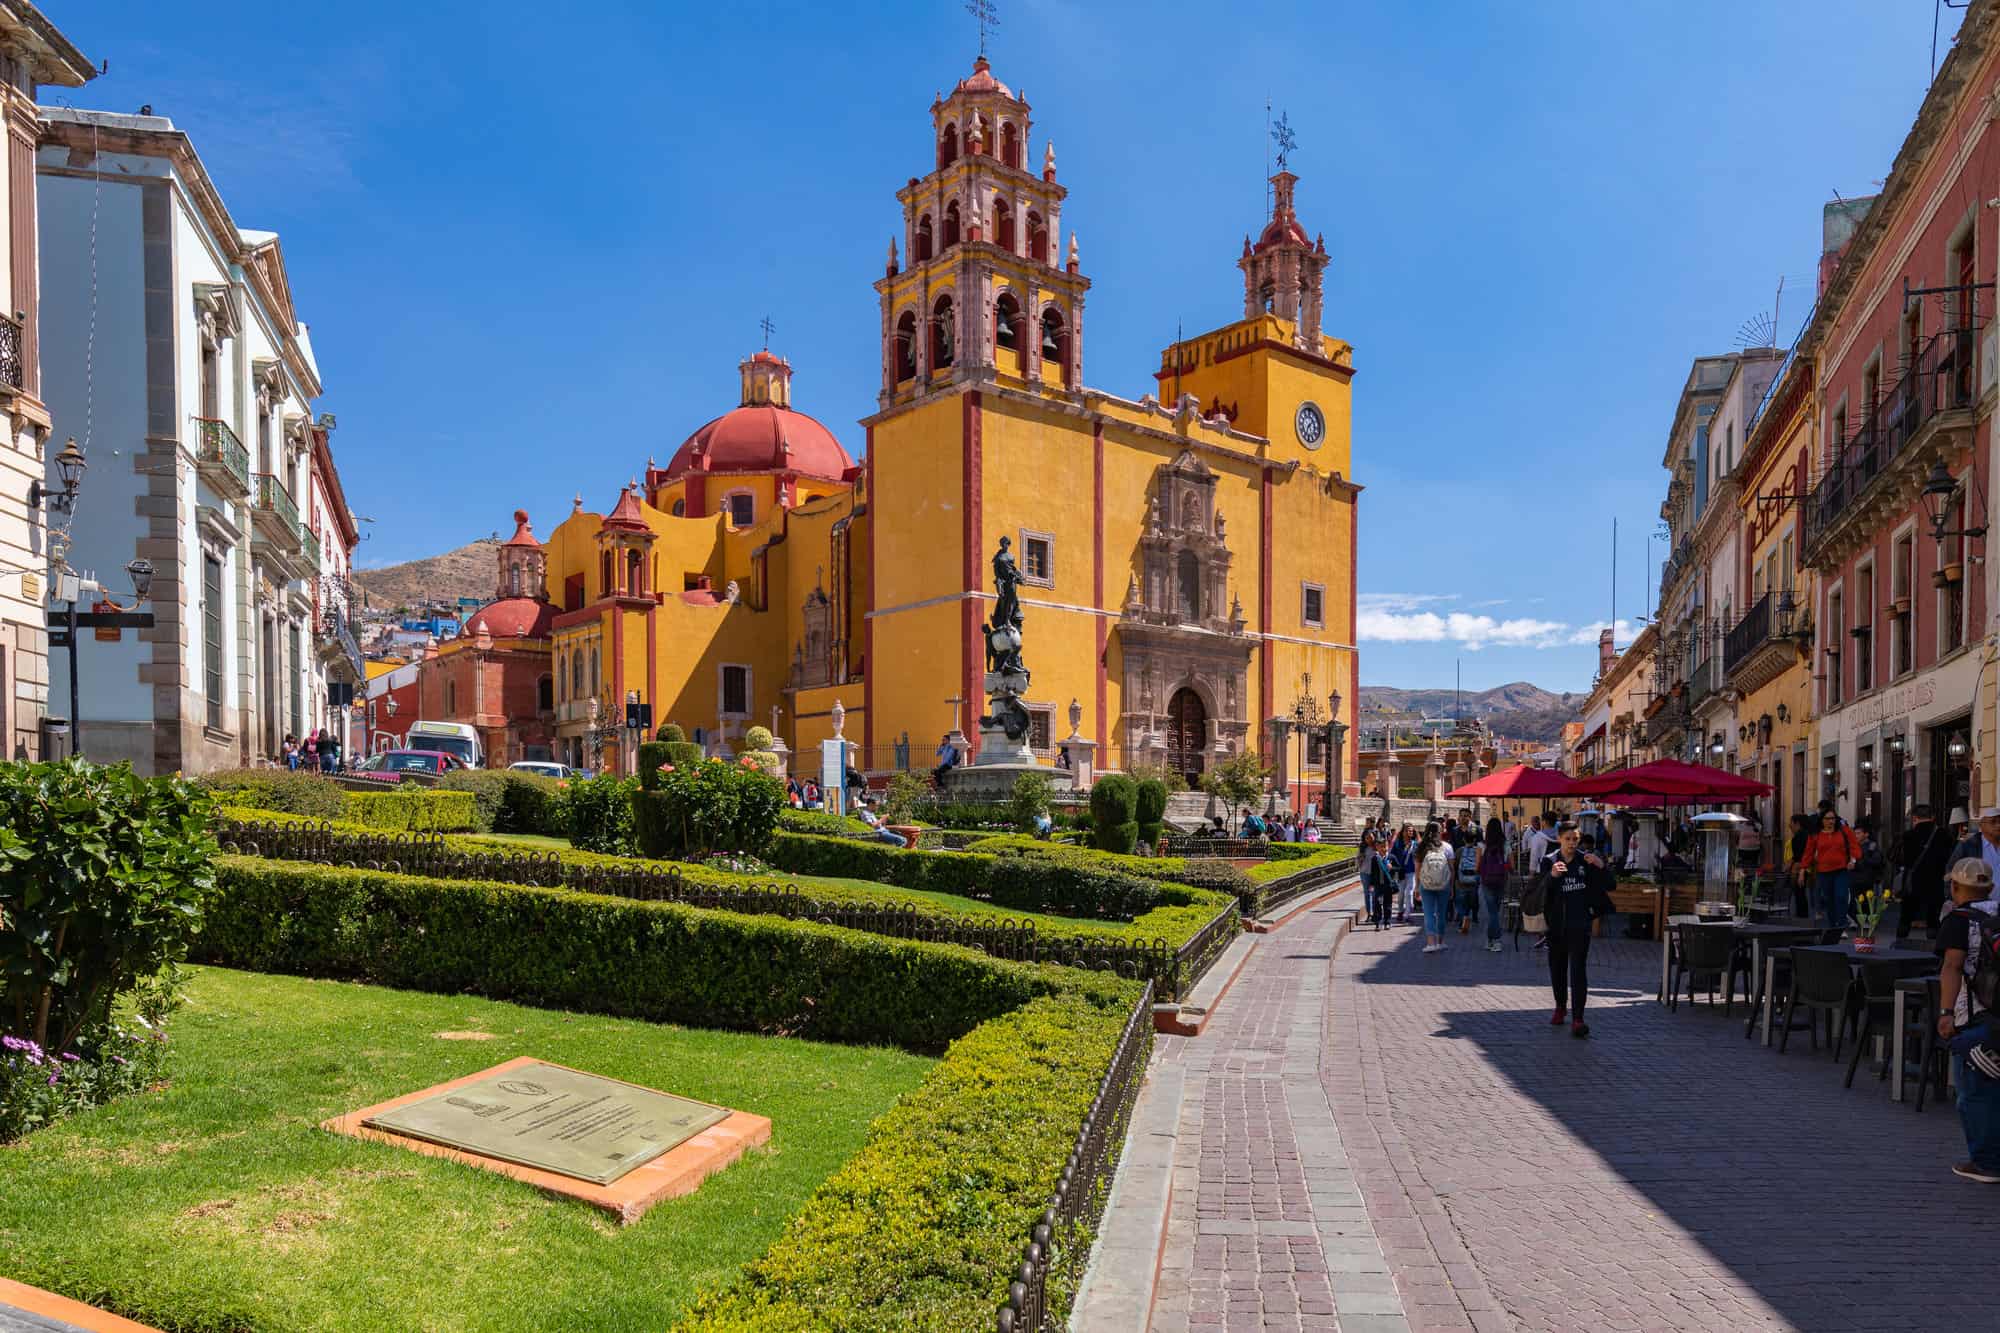 Basilica of Our Lady of Guanajuato cathedral and Plaza de la Paz in Guanajuato City, Mexico.